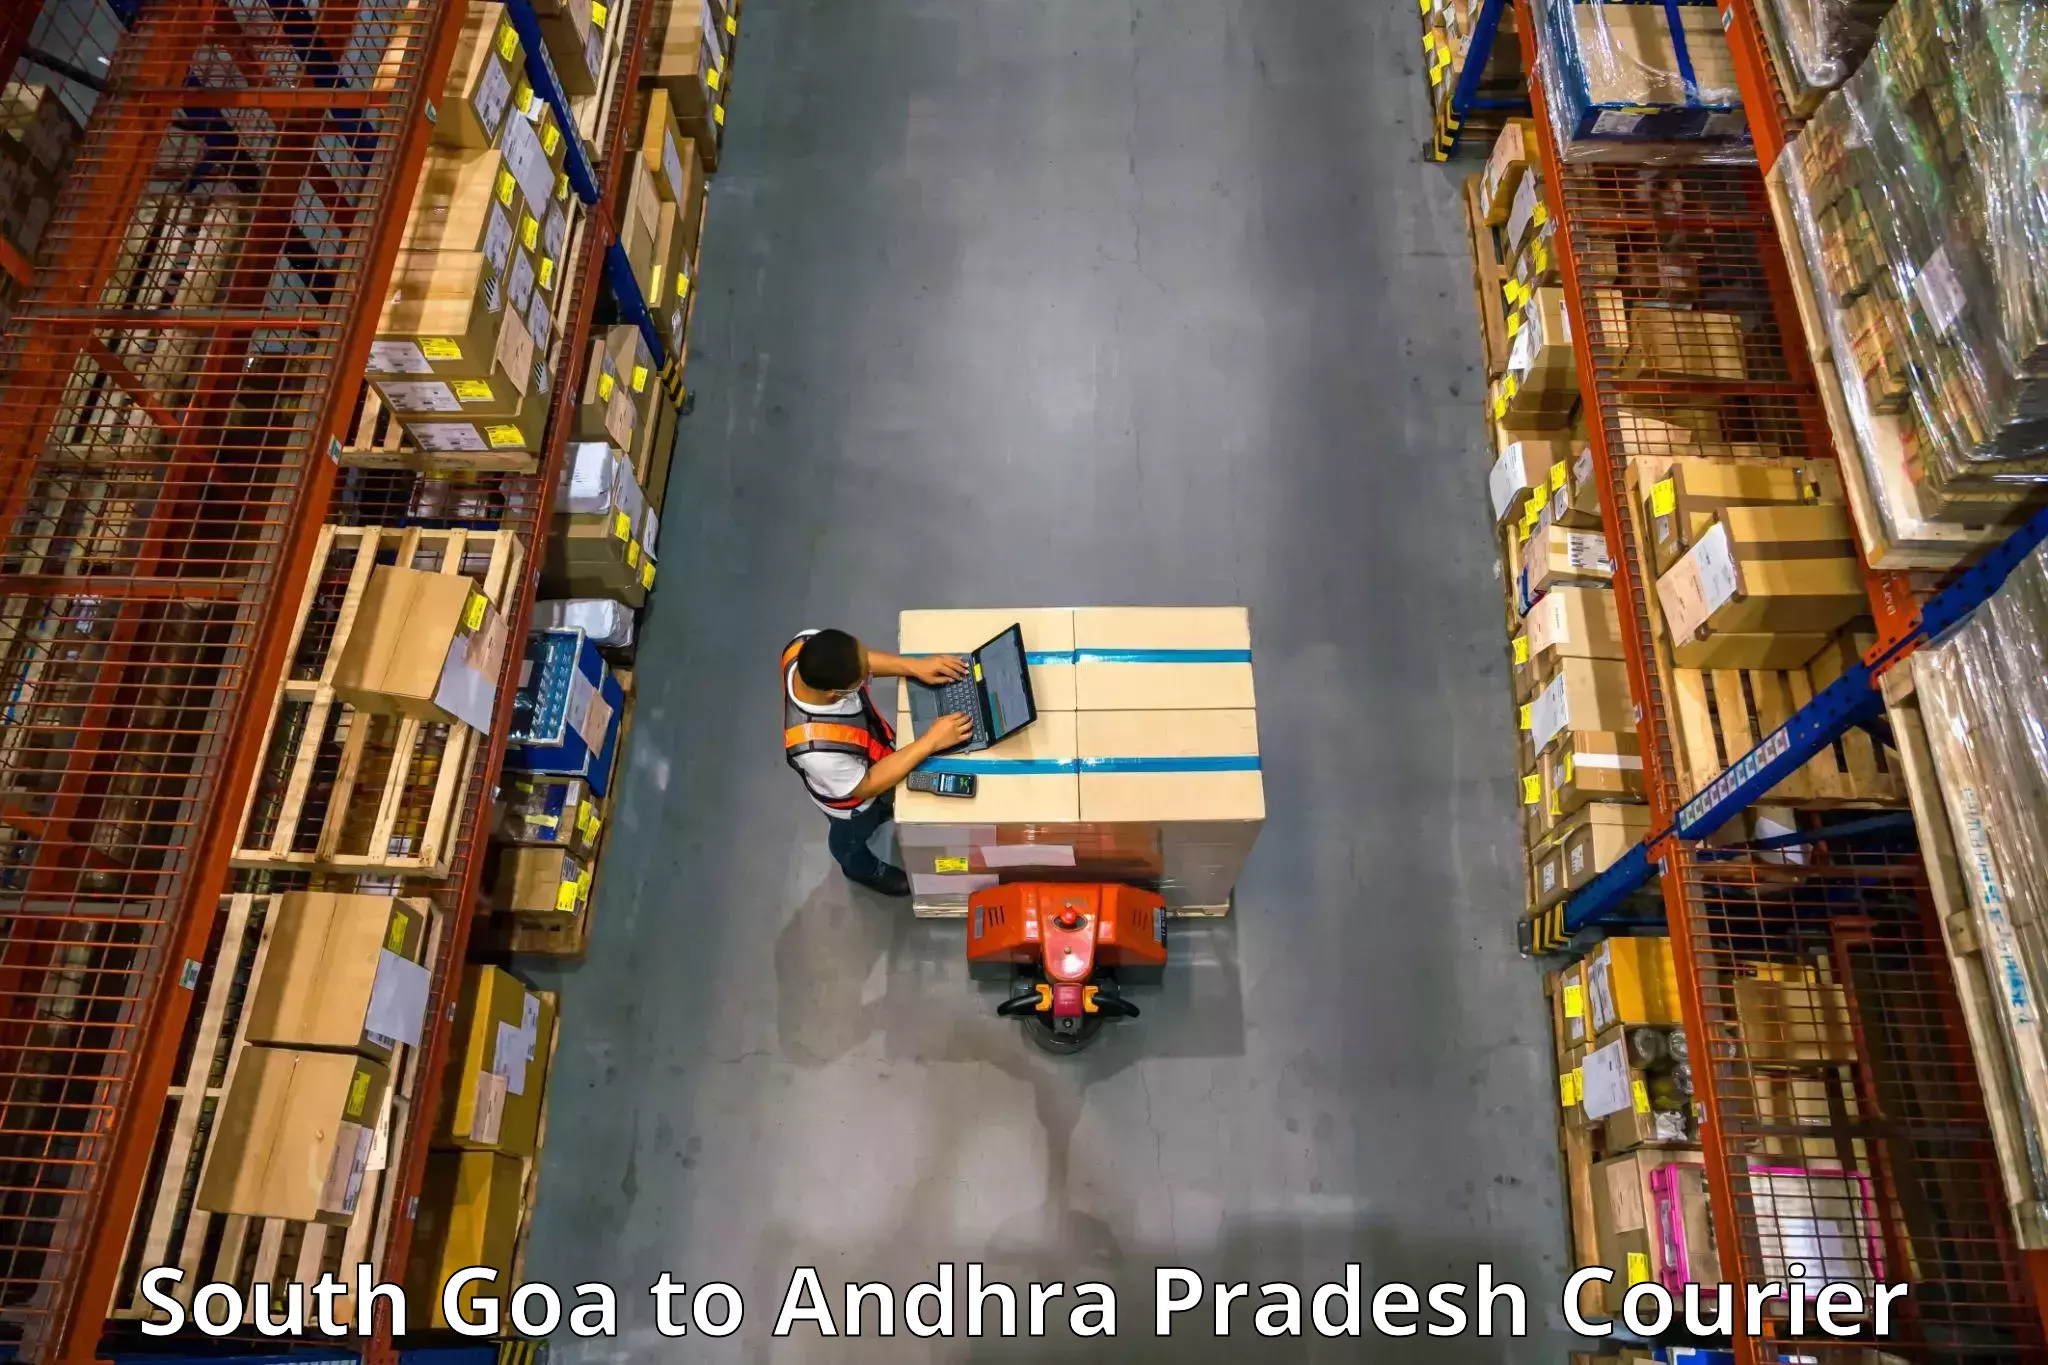 Home goods moving company South Goa to Draksharamam